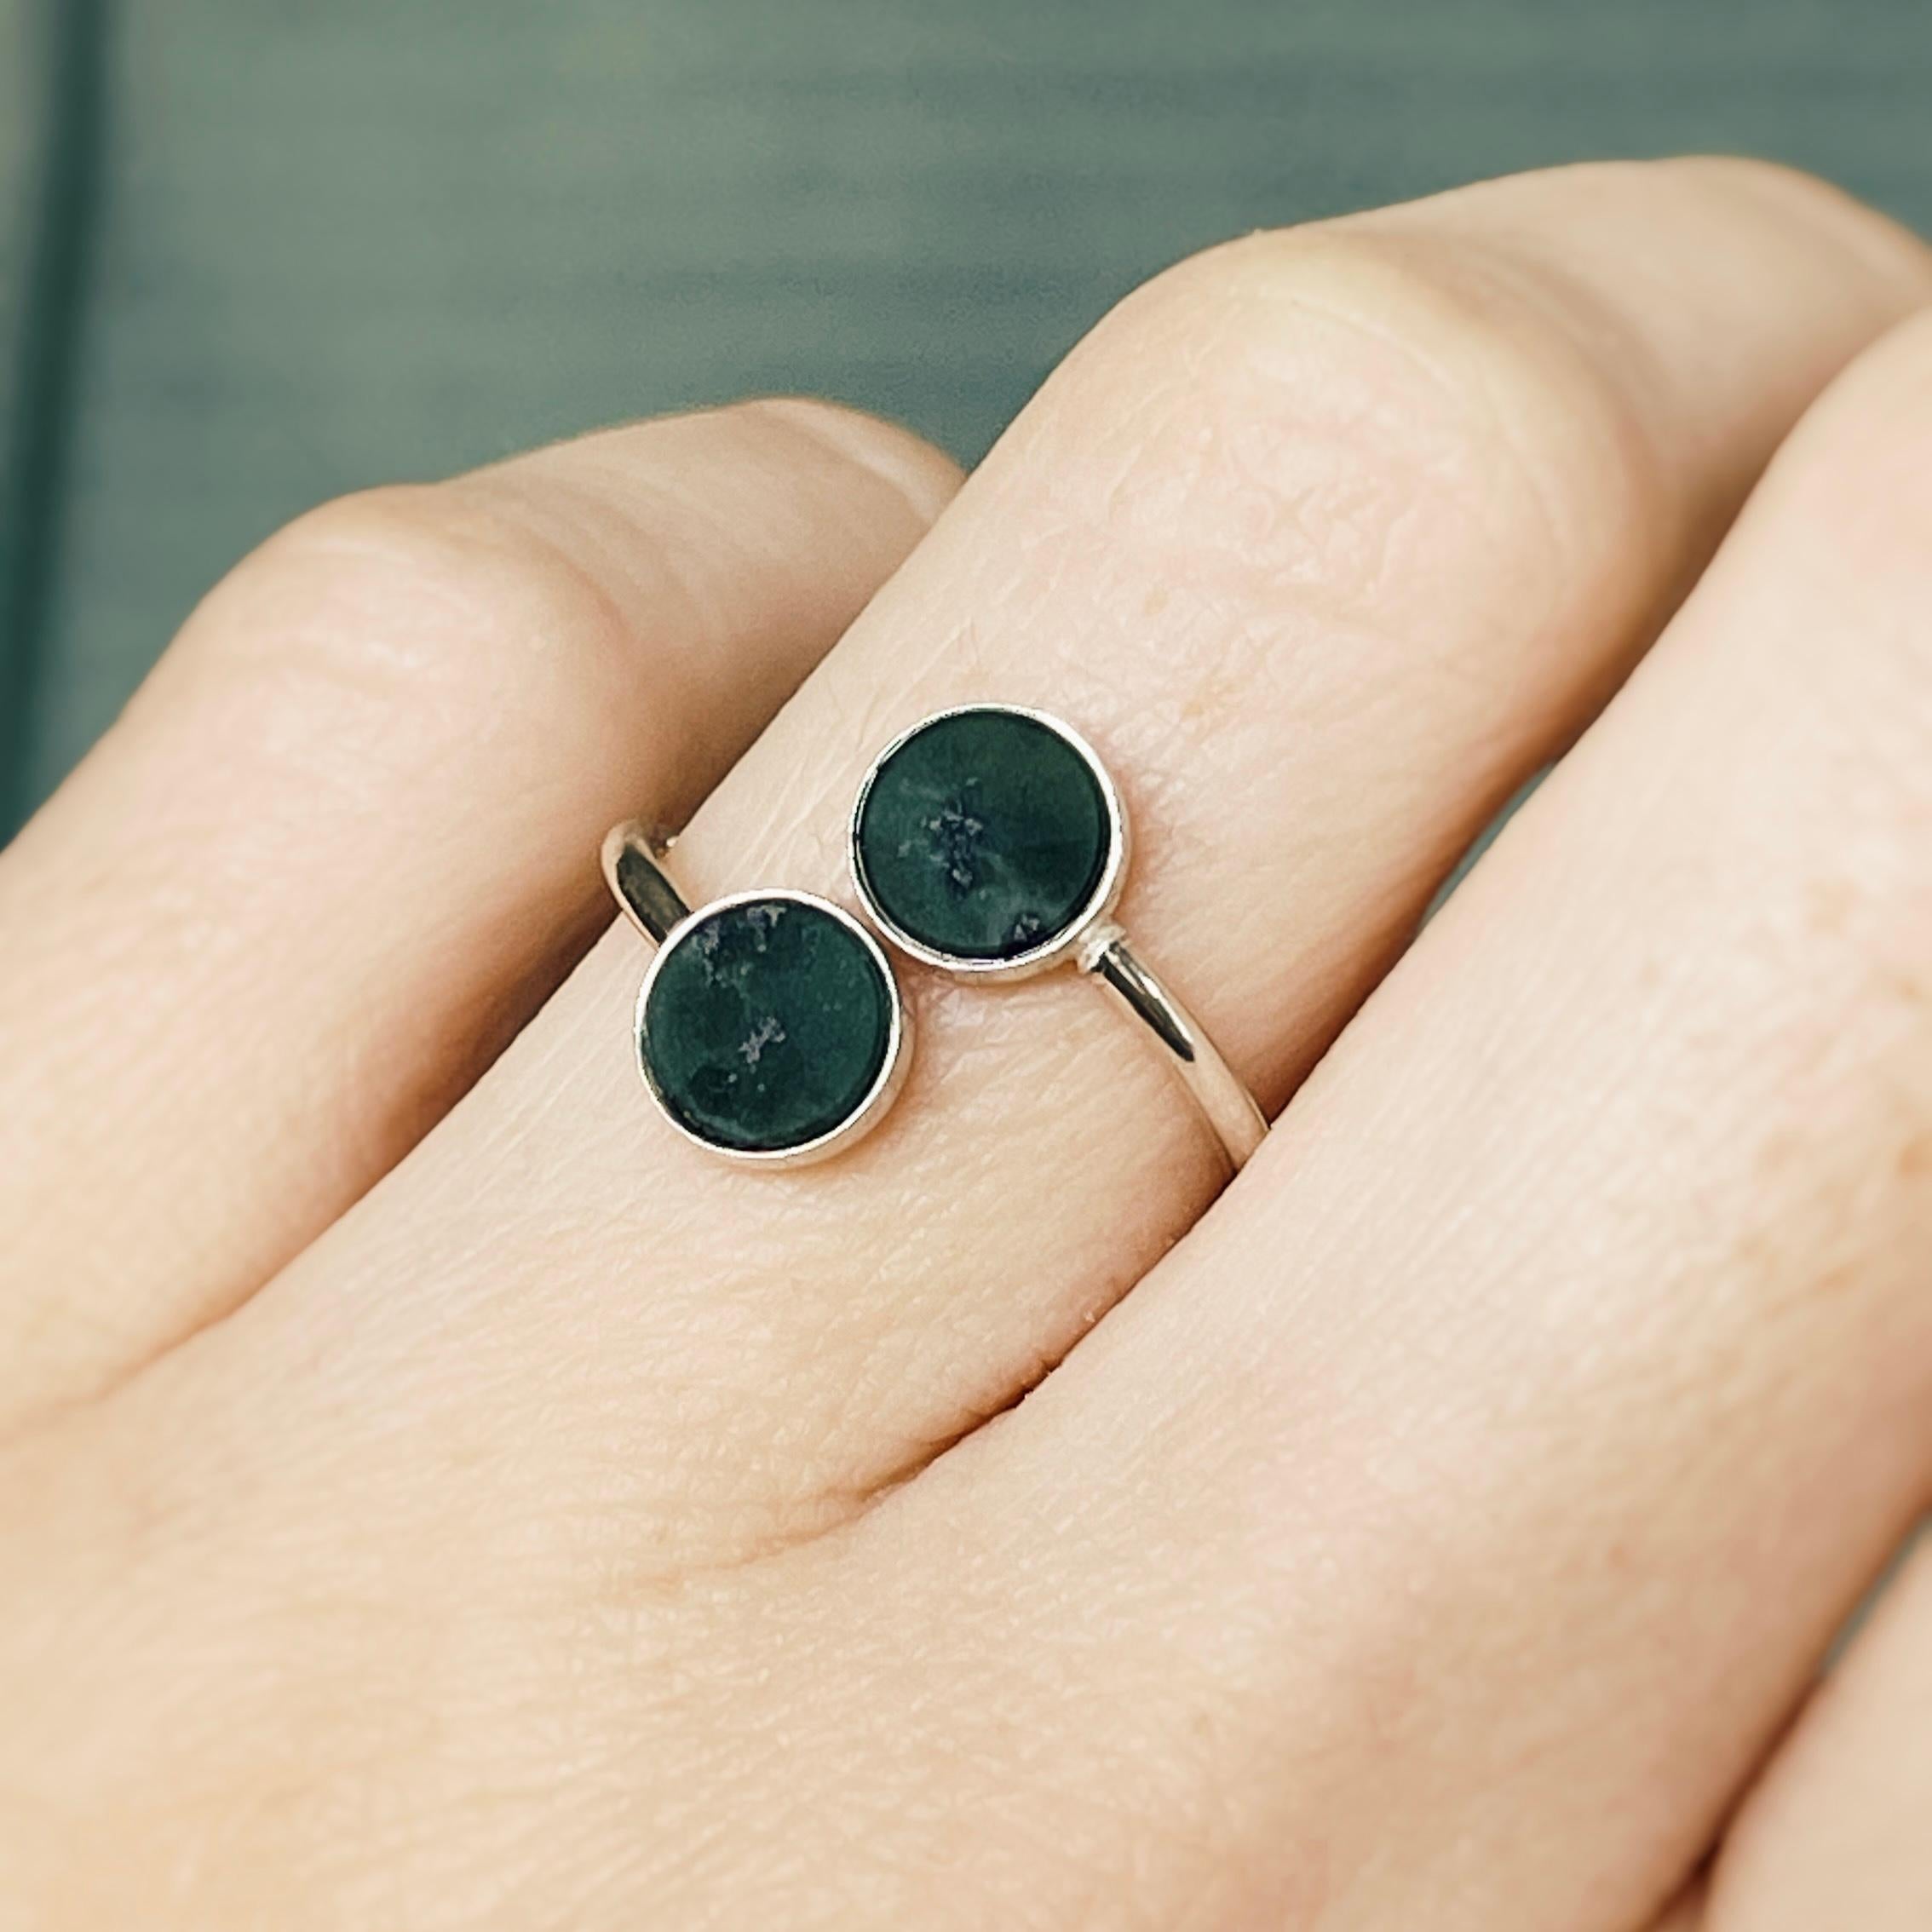 Erhöhen Sie Ihren Stil mit unserem Ring aus Sterlingsilber mit atemberaubenden Nephrit-Jadesteinen. Dieser verstellbare Ring bietet sowohl zeitlose Eleganz als auch individuellen Komfort für ein wirklich einzigartiges Accessoire.
Der Ring ist aus